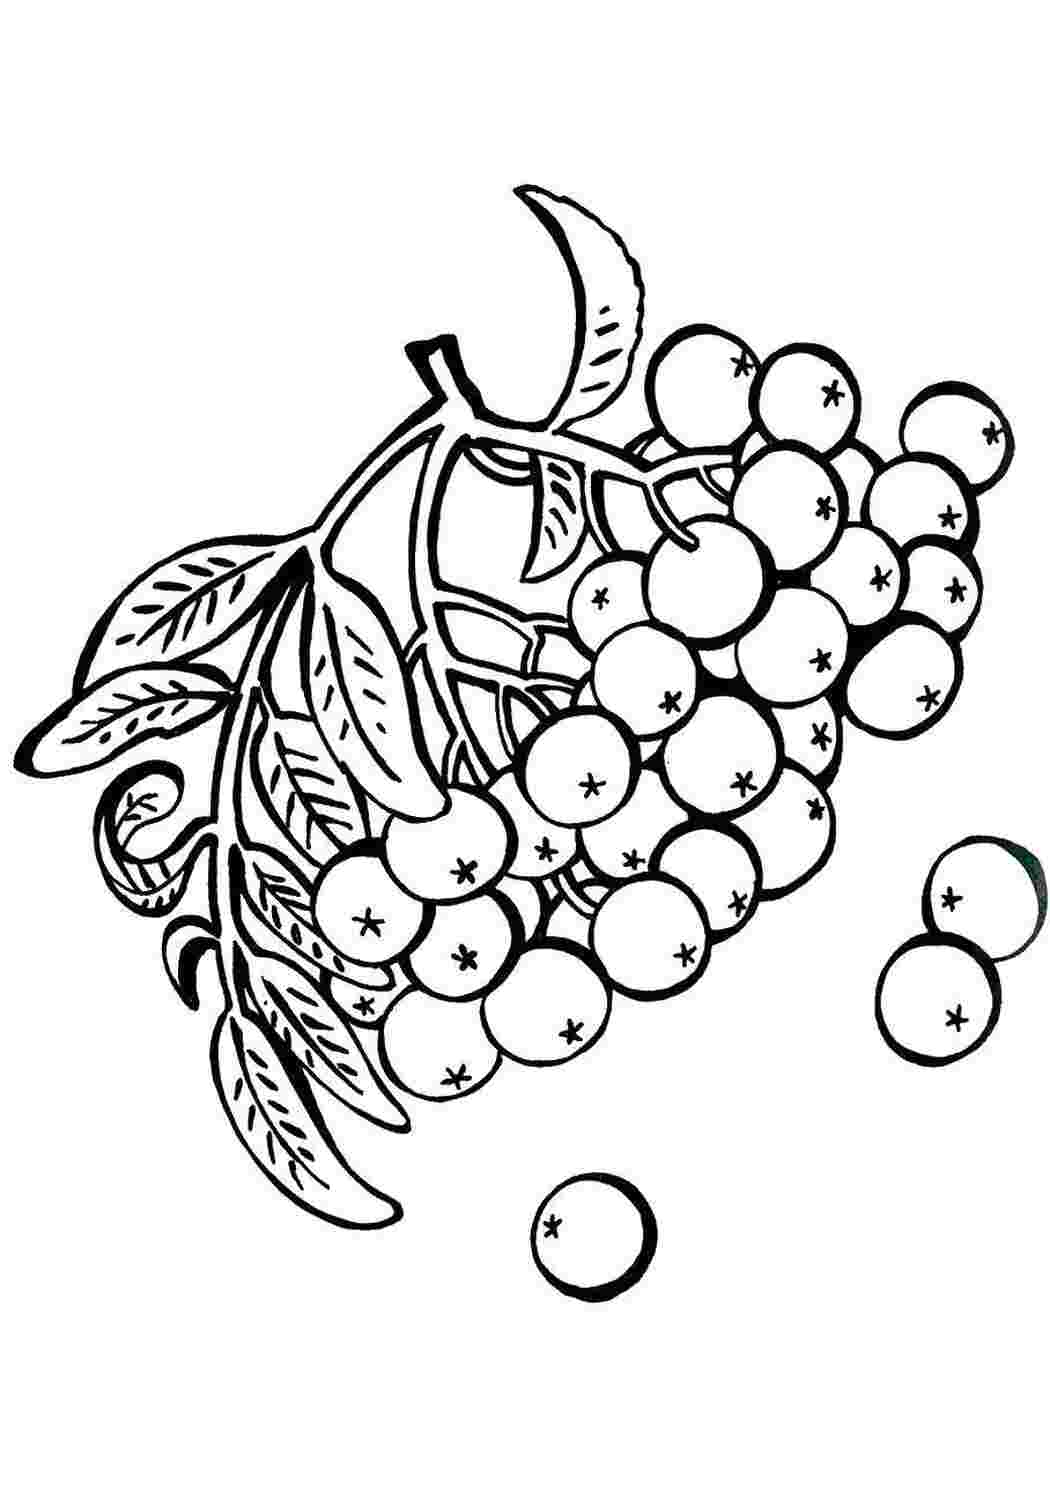 Раскраски Раскраски ягоды малина вишня арбуз вишня крыжовник  Ягодки рябины